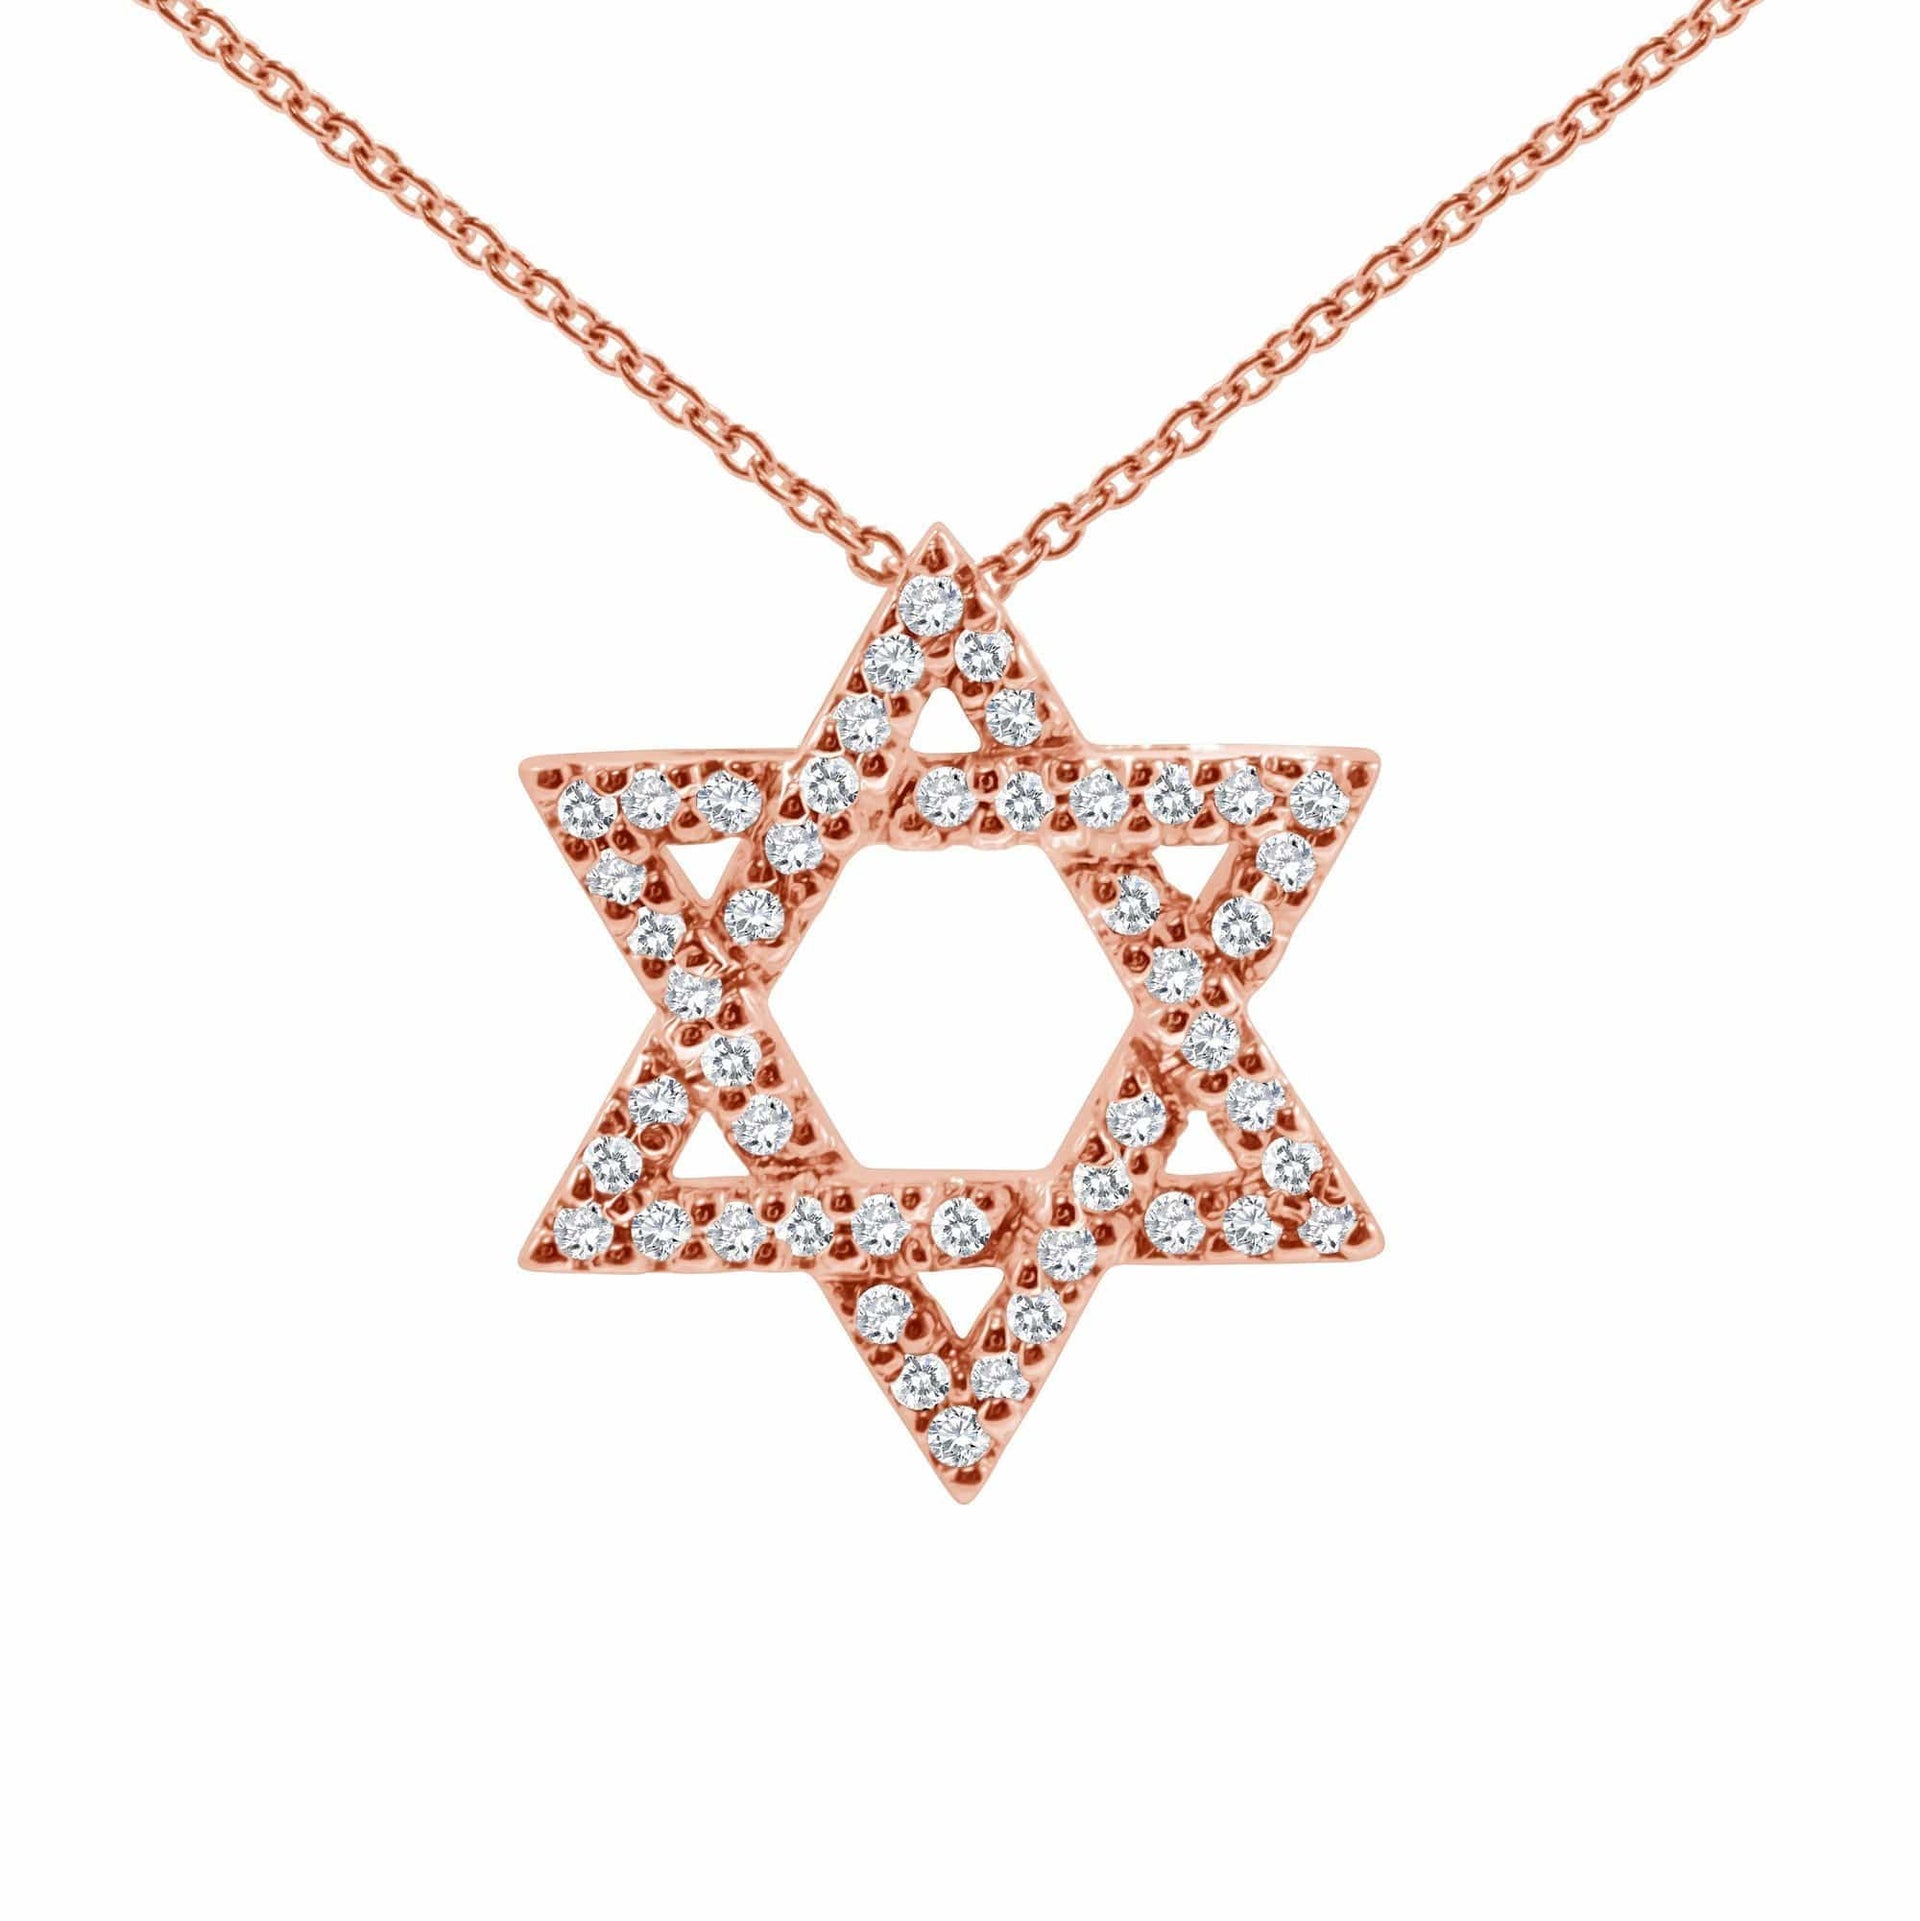 Alef Bet Necklaces 14k Rose Gold / 16" Star of David Sparkling Diamond 14k Gold Necklace - Gold, White Gold or Rose Gold